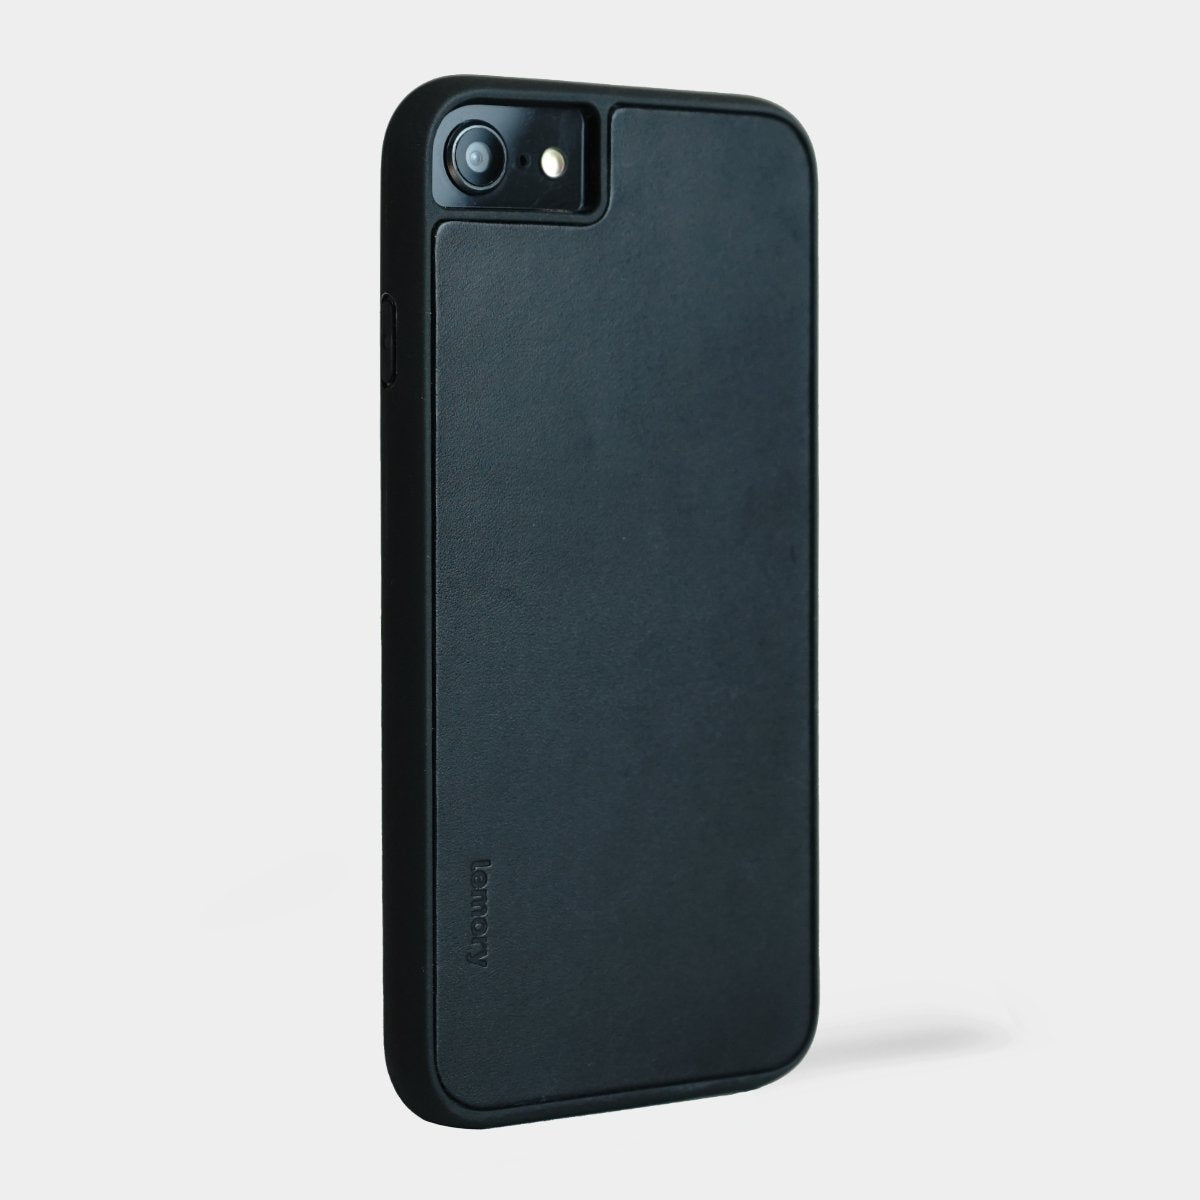 Prémiový kožený kryt Lemory PROTECT na mobil Apple iPhone 7 / 8 / SE 2020 - Černý (Prémiový kožený kryt, pouzdro, obal Lemory PROTECT na mobilní telefon Apple iPhone 7 / Apple iPhone 8 / Apple iPhone SE 2020 - Černý)